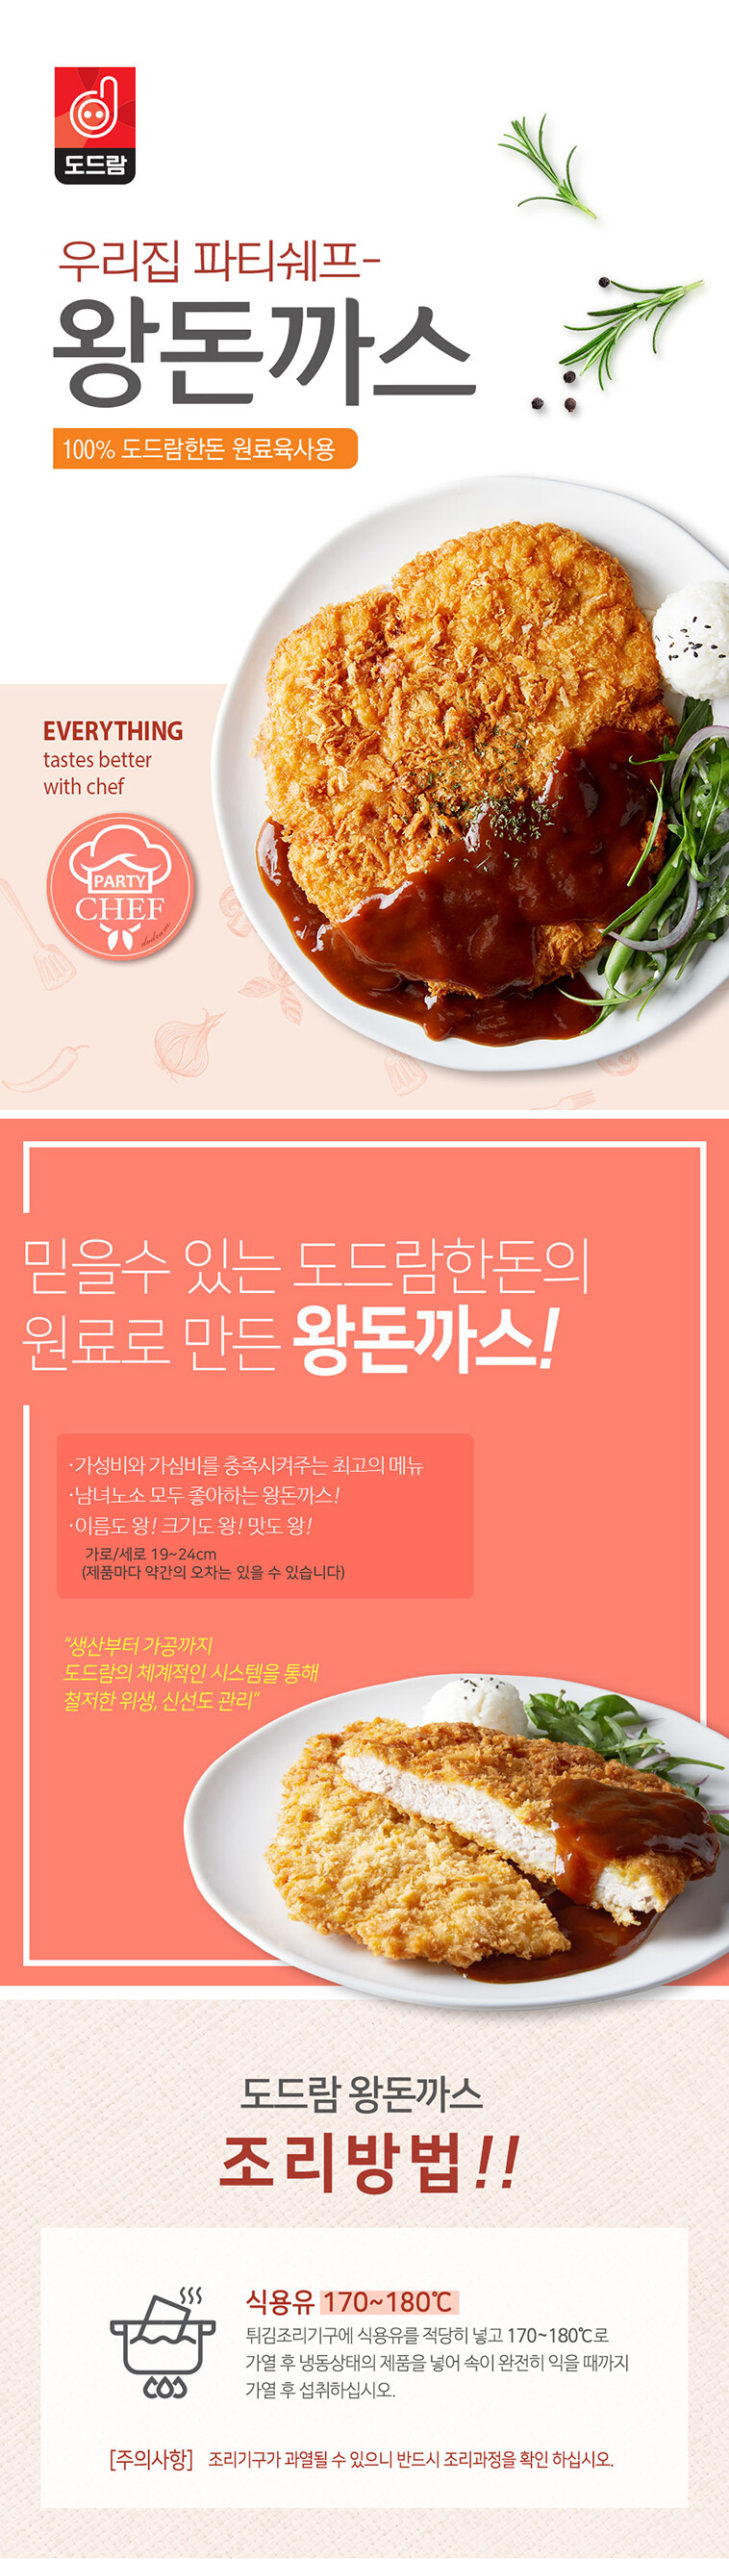 韓國食品-[韓國Dodram] 大塊炸豬排 330g